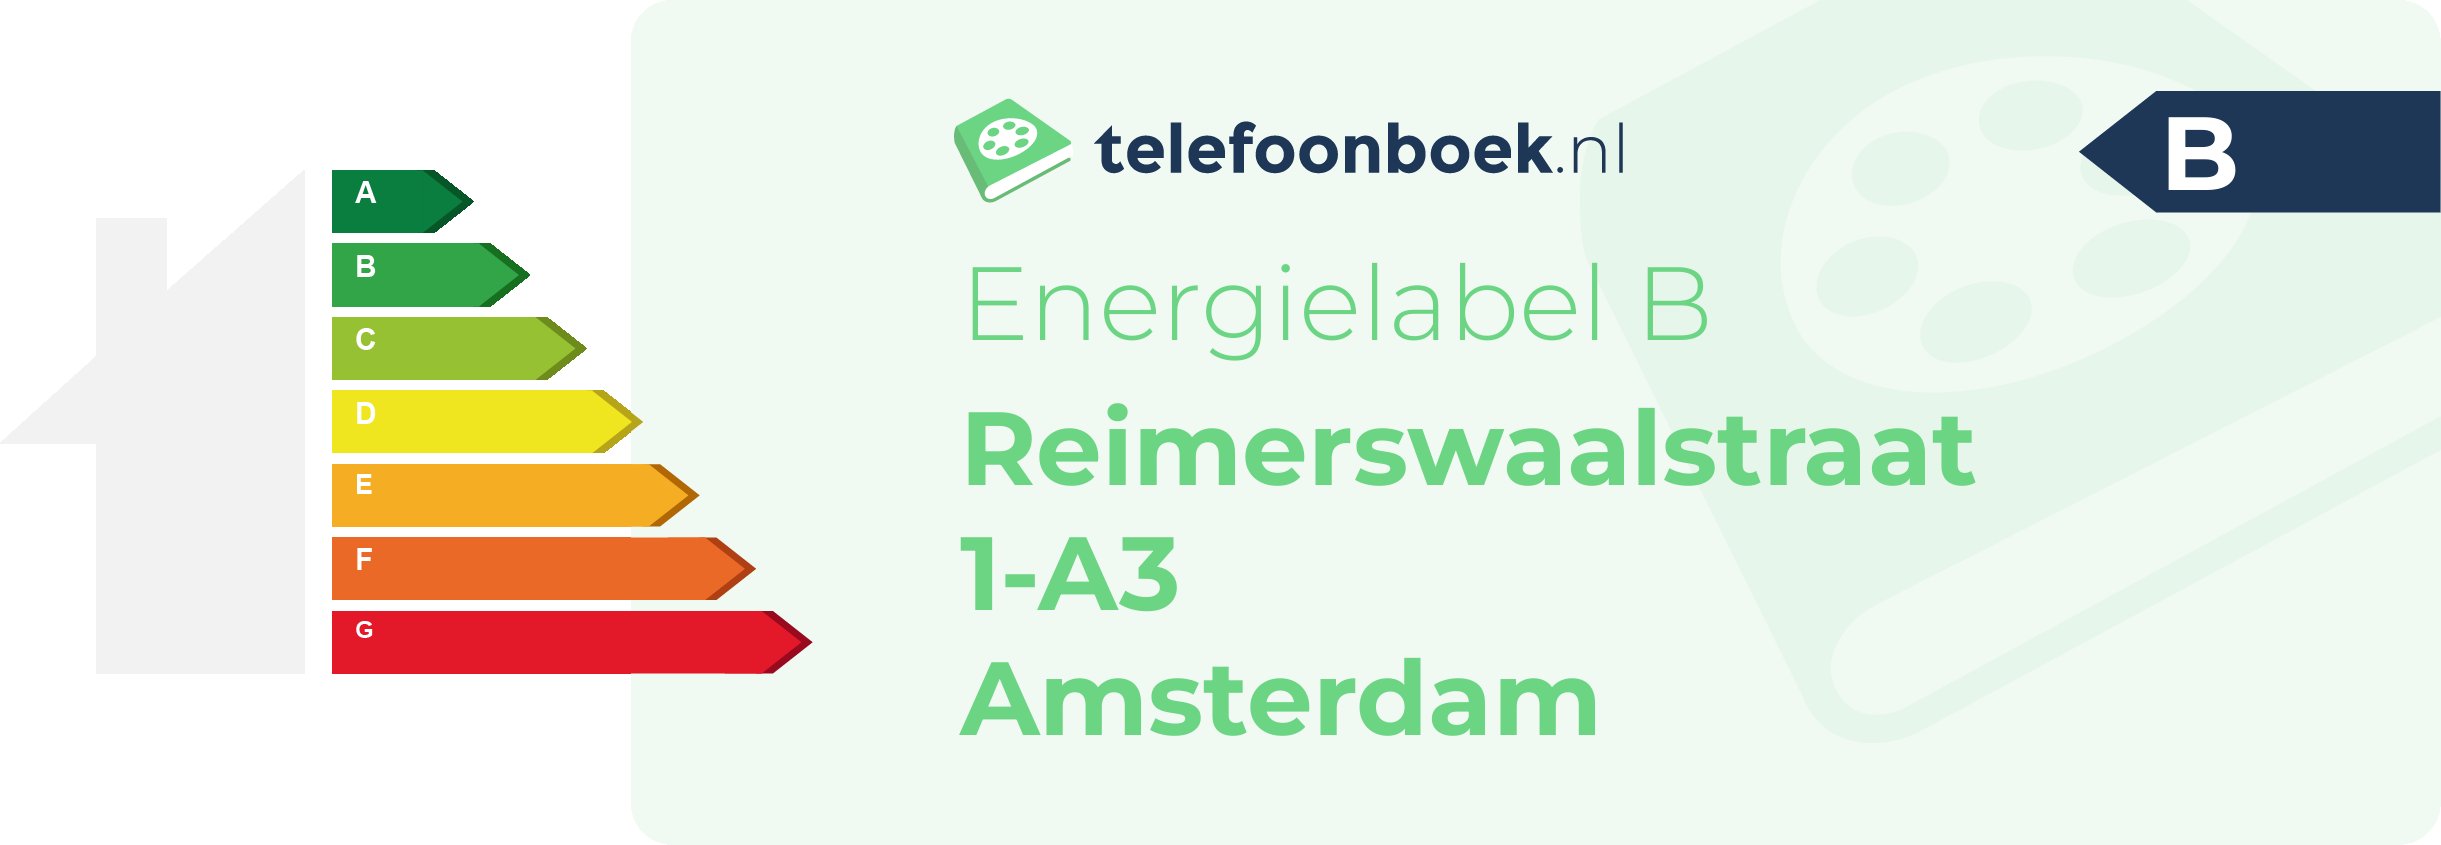 Energielabel Reimerswaalstraat 1-A3 Amsterdam